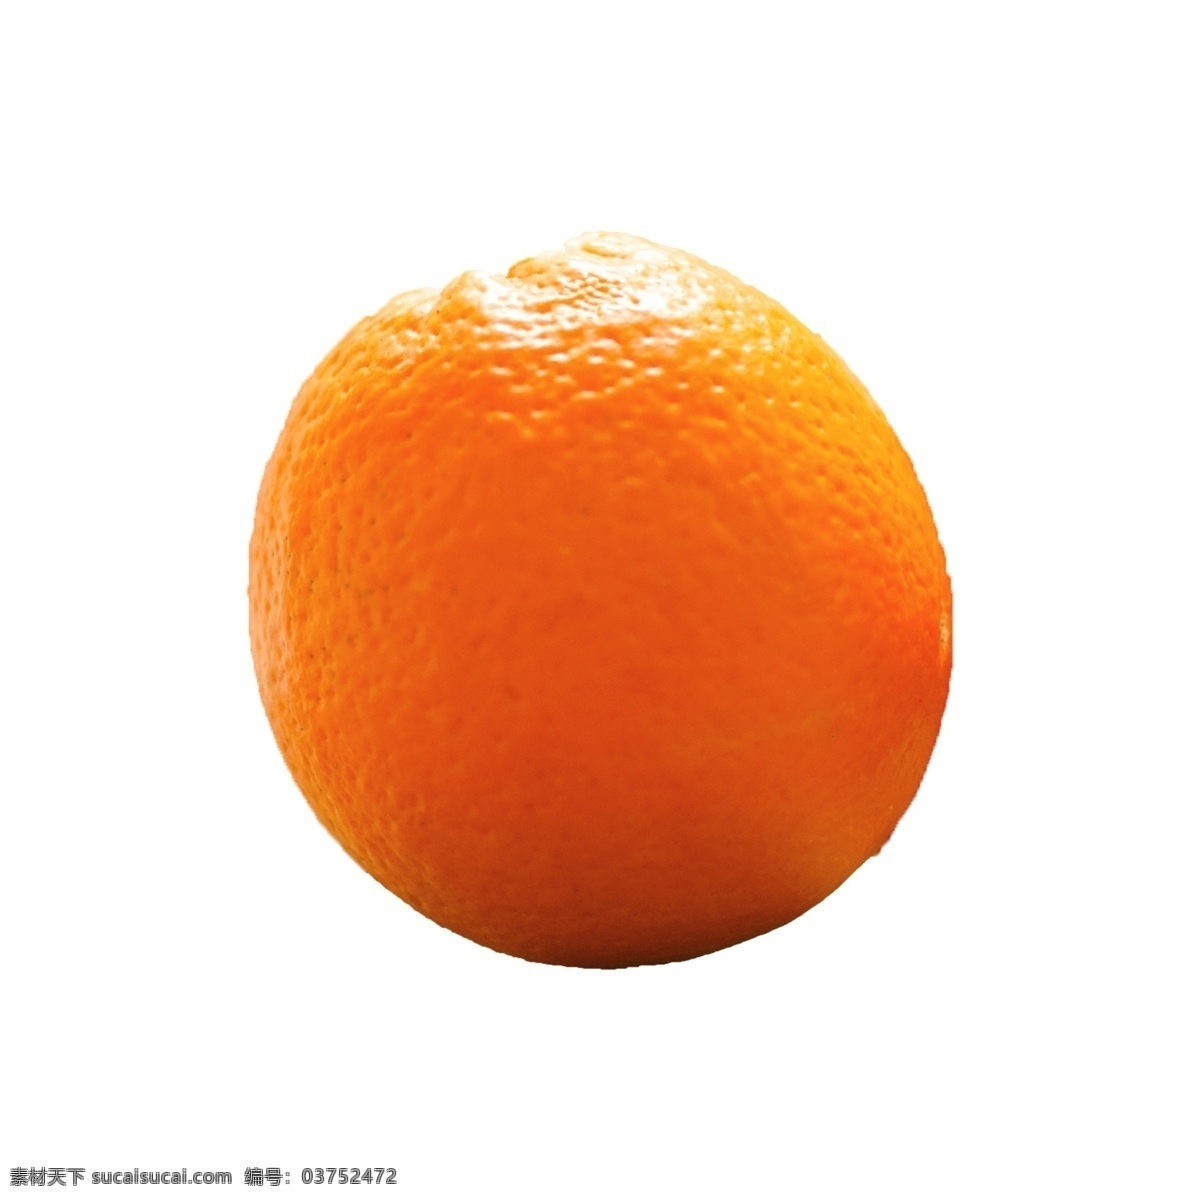 一个 橙子 实拍 免 抠 水果 营养 维生素 一个橙子 橙子免抠 实物拍摄 摆拍 美味 清甜 橙汁 新鲜